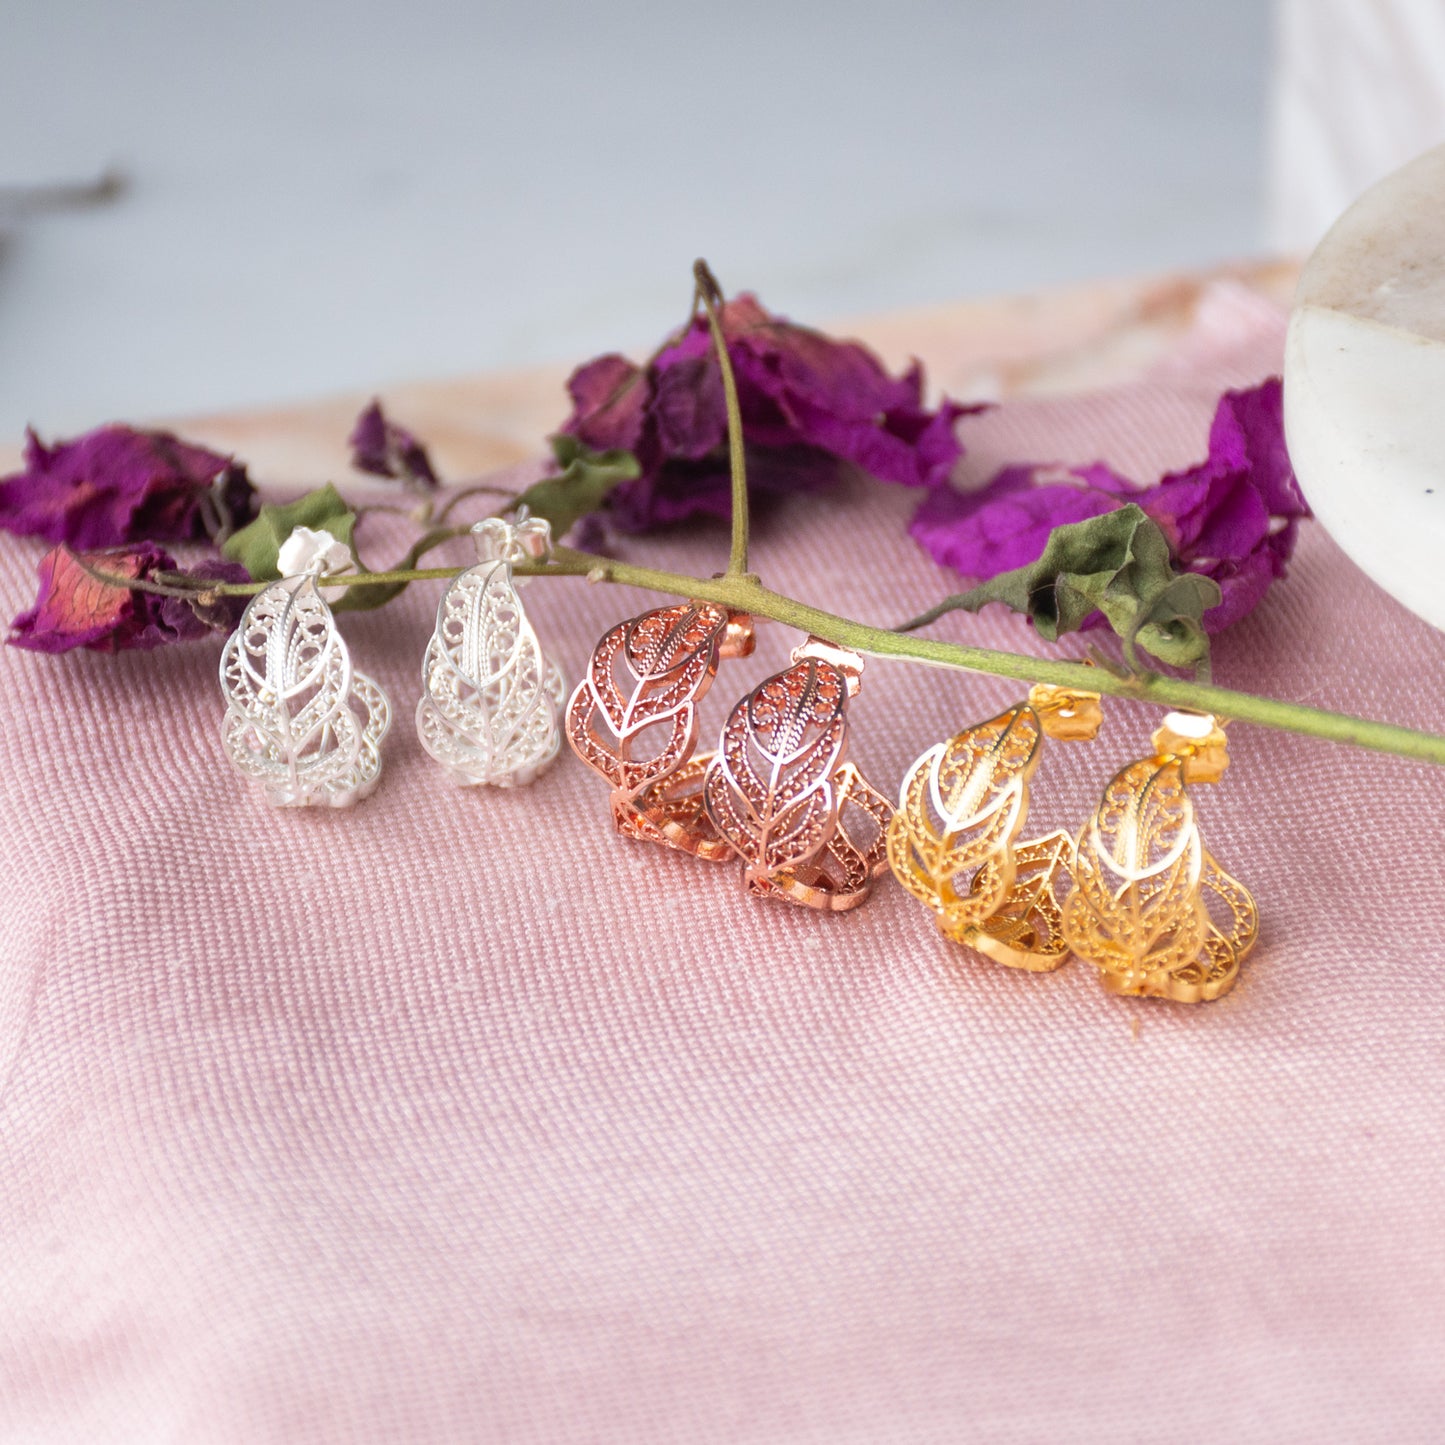 Aretes cangonga o aros en filigrana momposina elaborados en plata 9.80 con chapado en oro de 24 kilates u oro rosado y protección en laca cataforética.